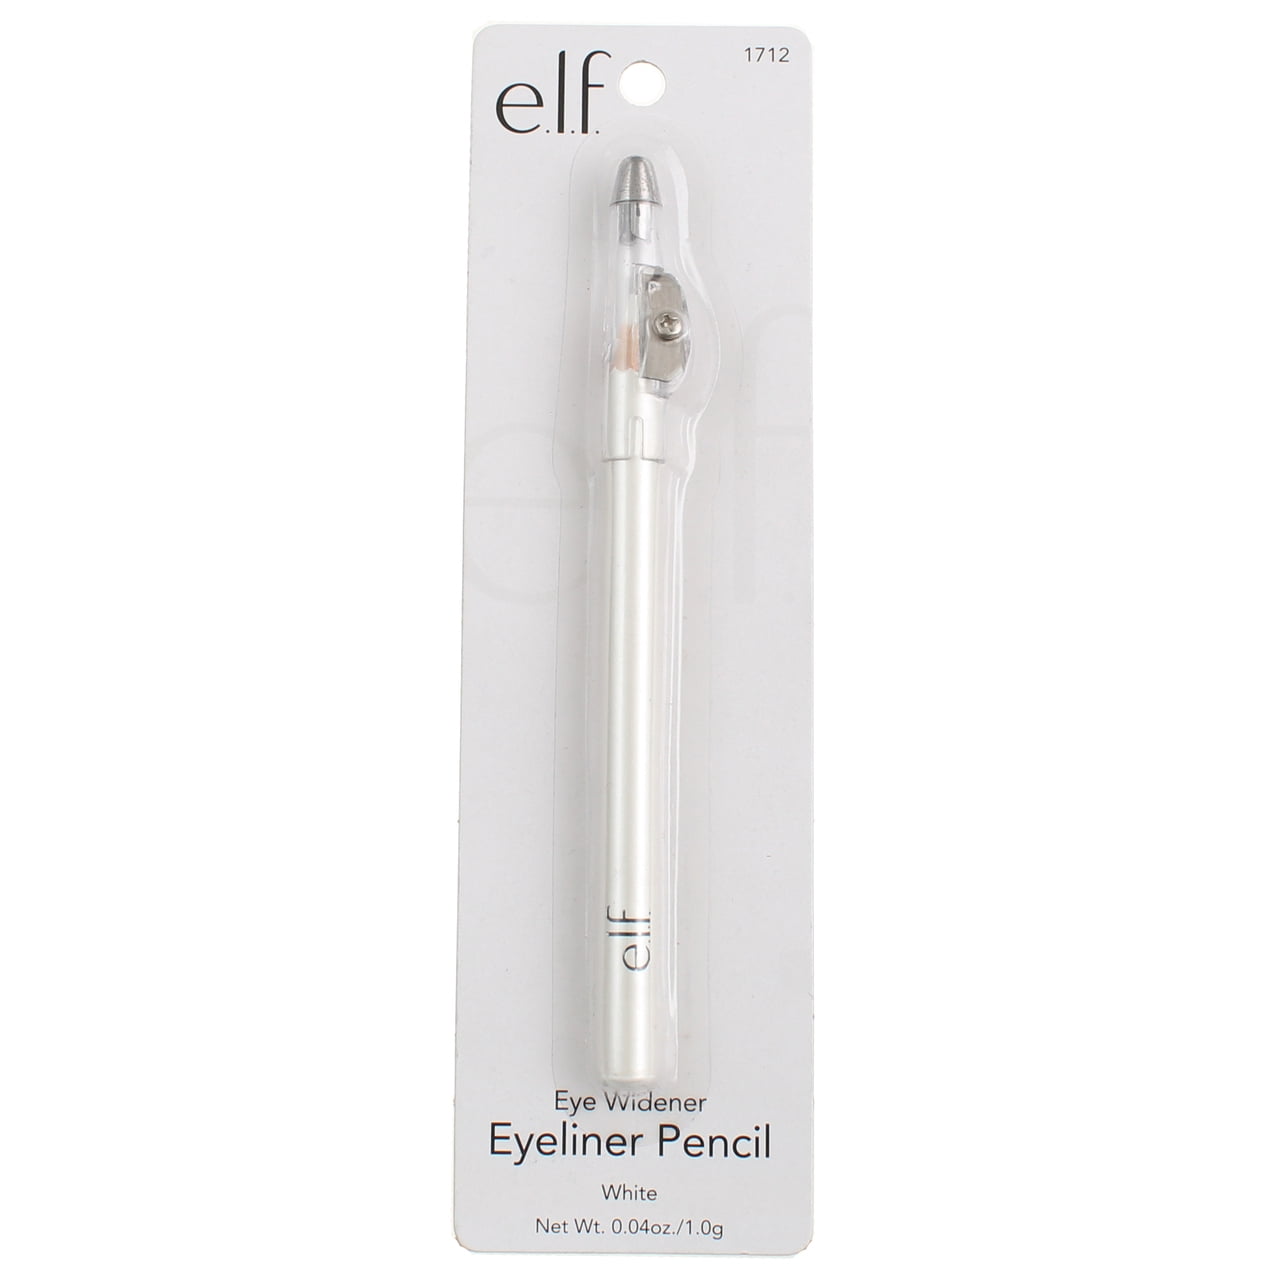 Imagination insulator skraber e.l.f. Eye Widener Eye Widener Eyeliner Pencil, White, 0.04 oz - Walmart.com